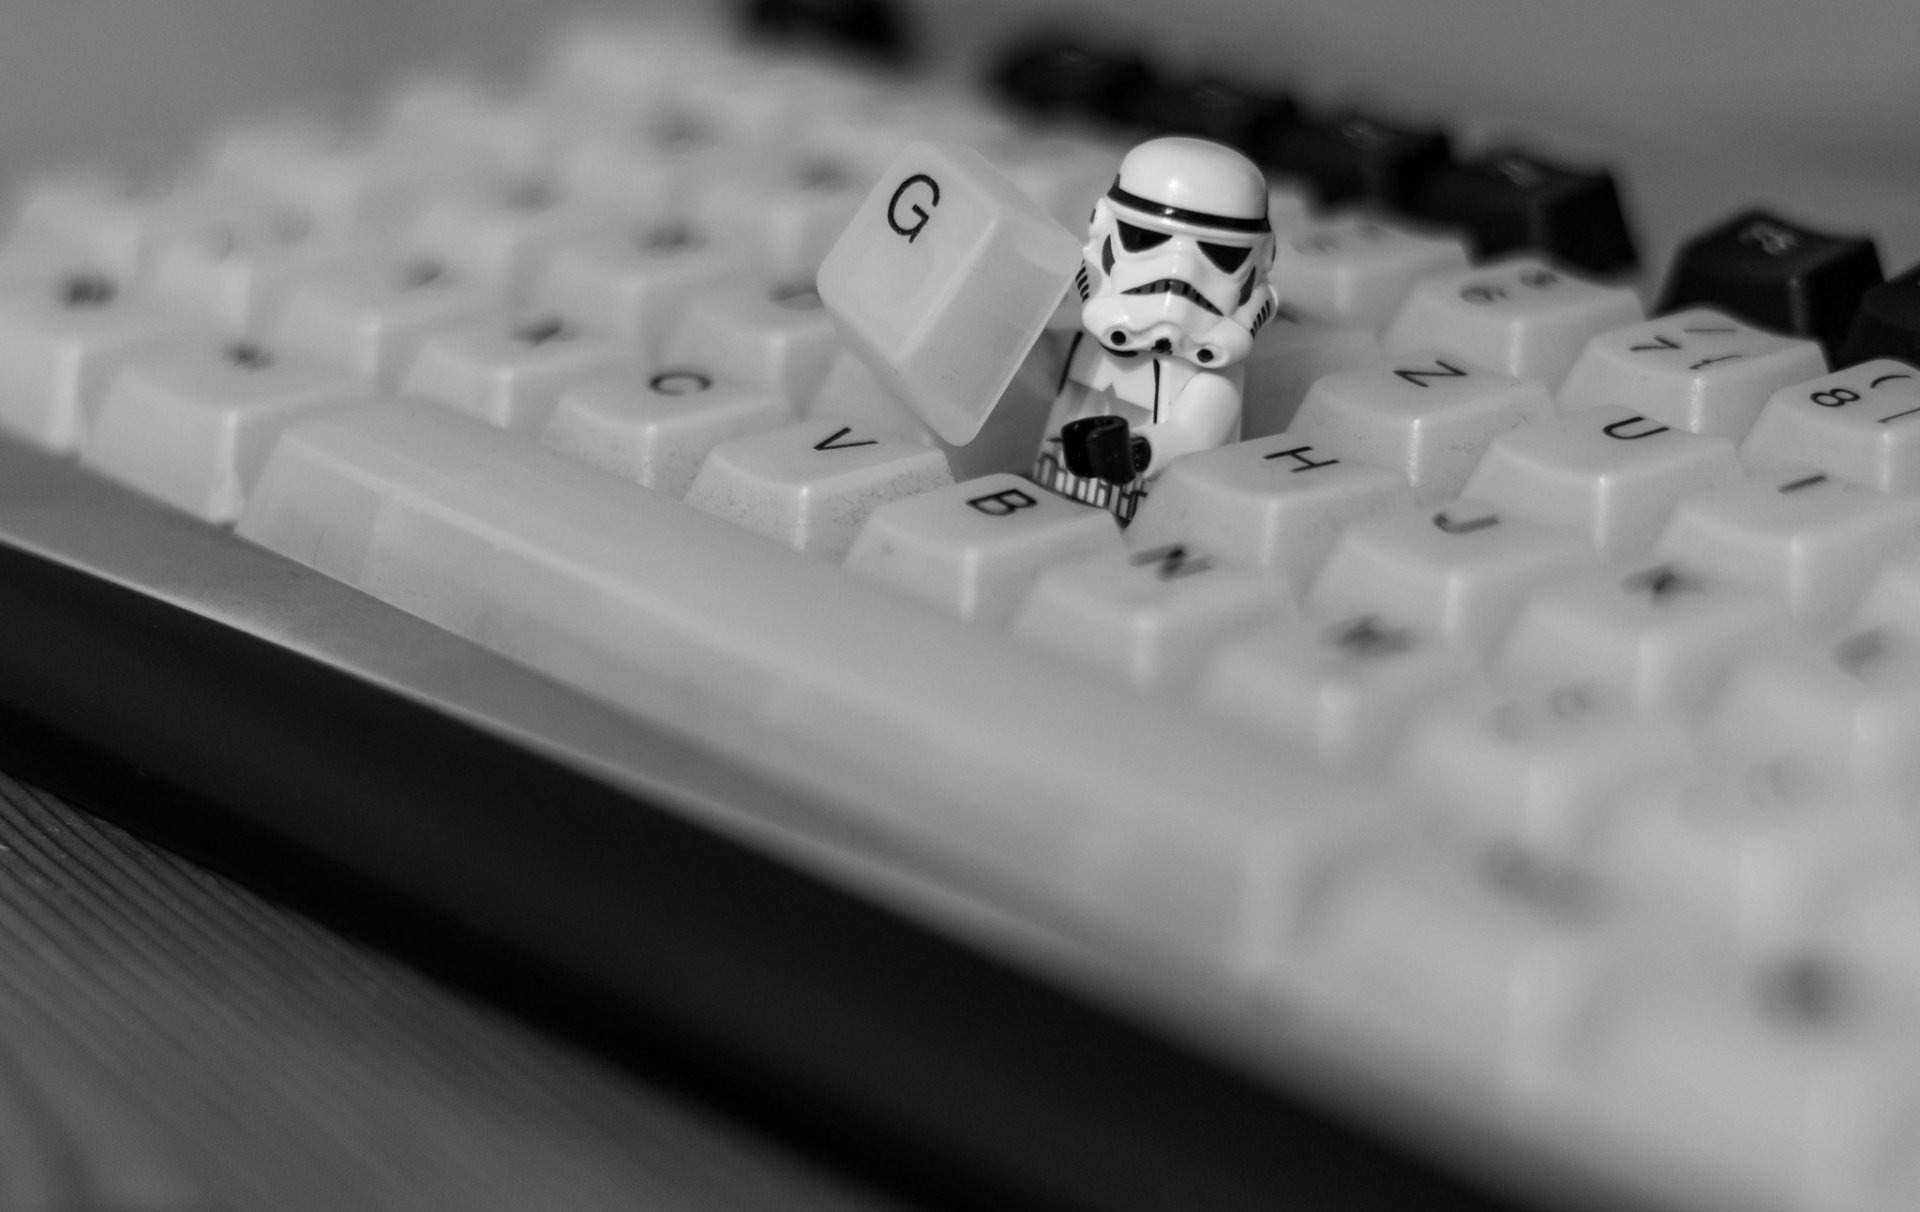 Star Wars Stormtrooper Keyboard , HD Wallpaper & Backgrounds